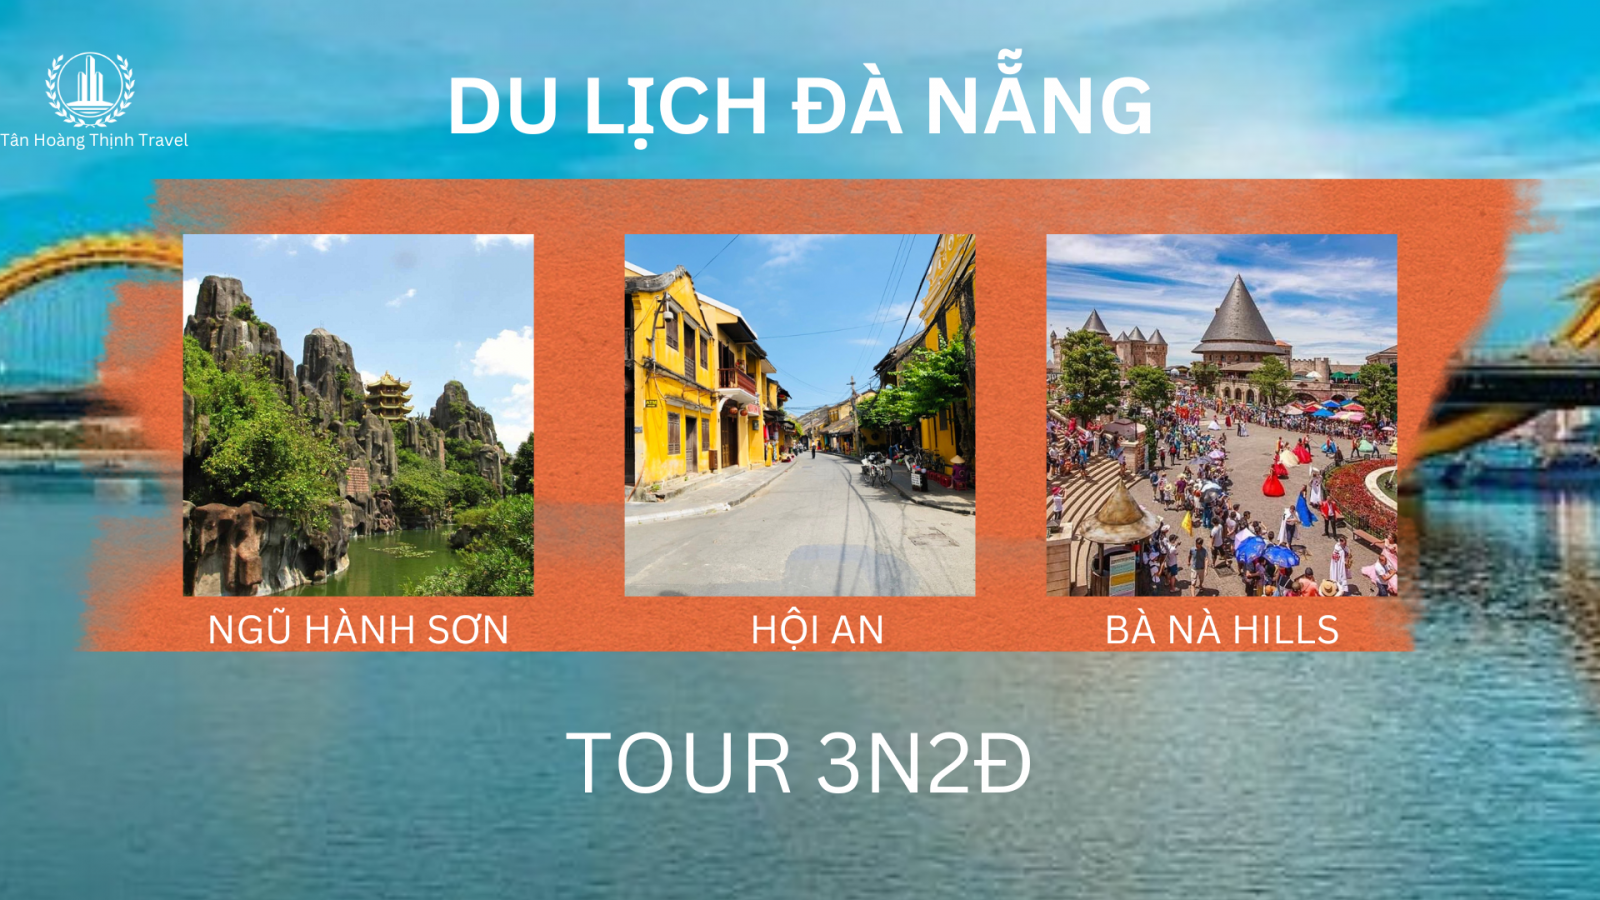 Tour du lịch 3n2đ tại Đà Nẵng